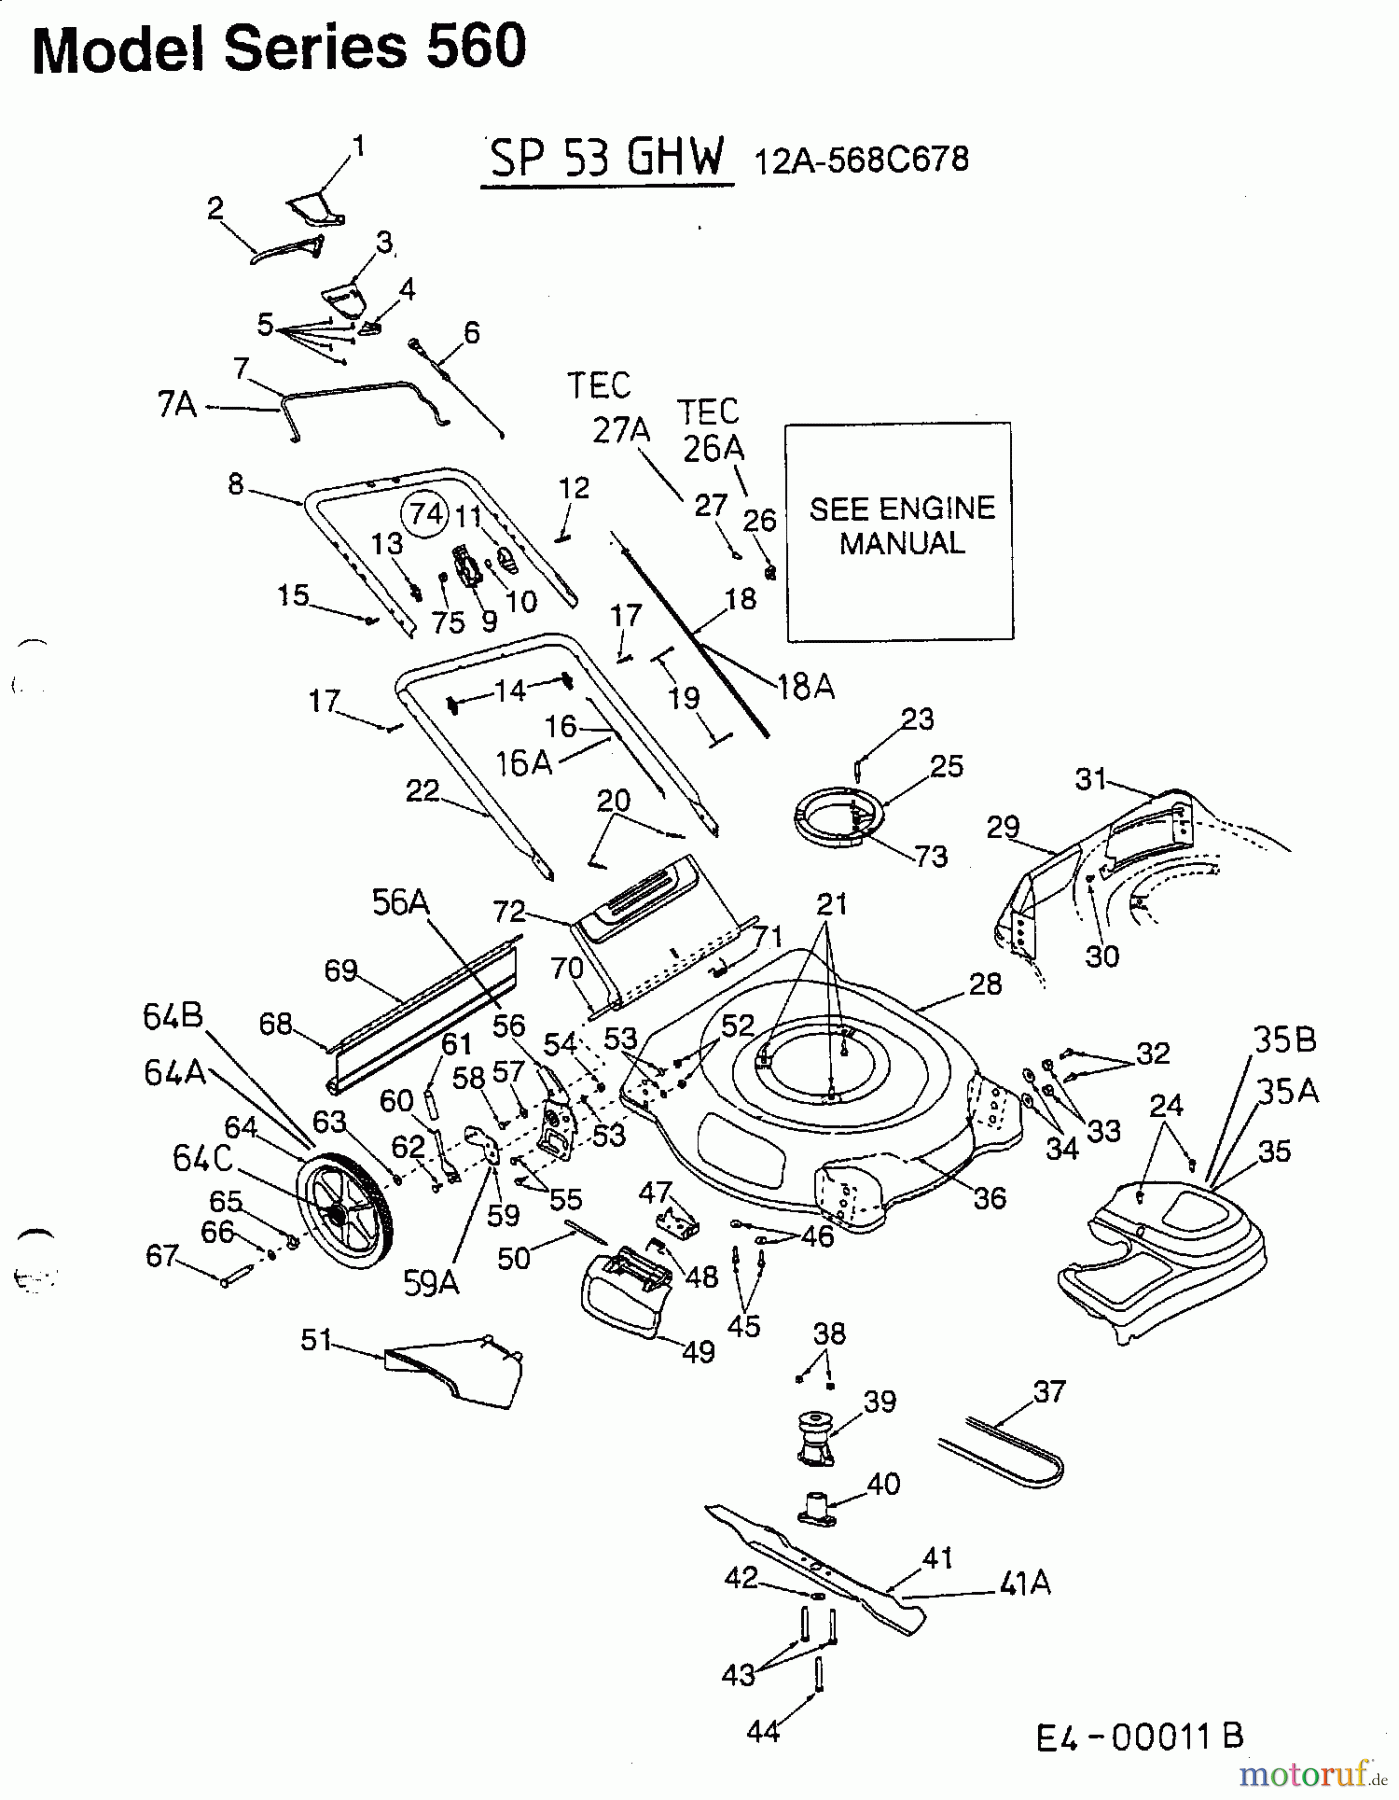  MTD Motormäher mit Antrieb SP 53 GHW 12A-568C678  (2002) Grundgerät